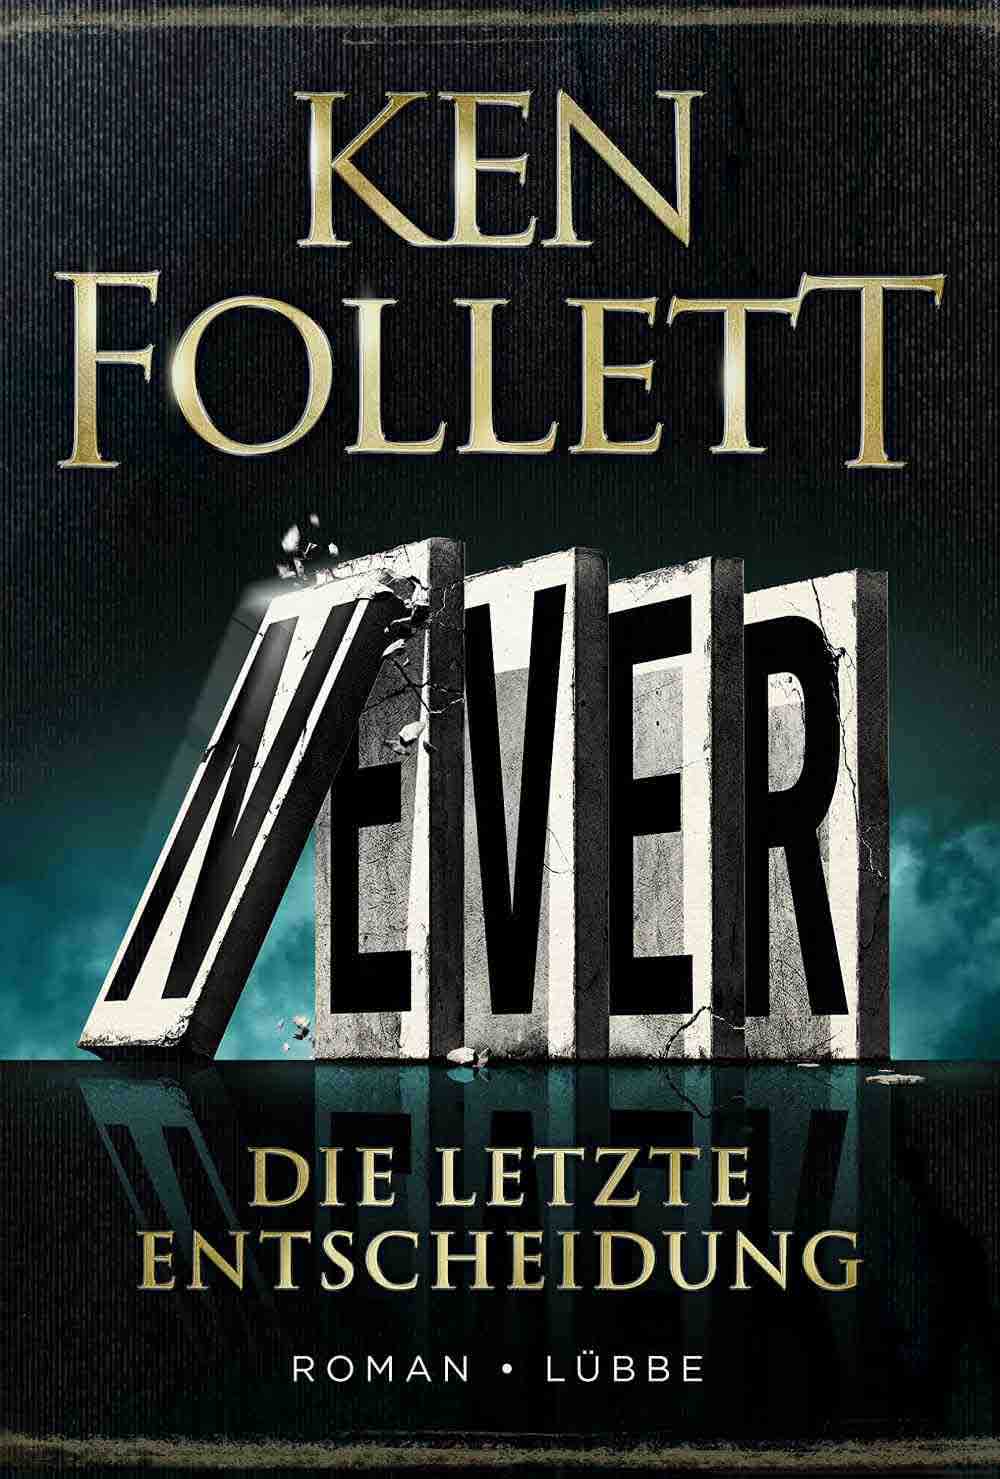 Anzeige: Lesetipps für Gütersloh: Ken Follett, »Never – die letzte Entscheidung«, Buch online bestellen, online shoppen